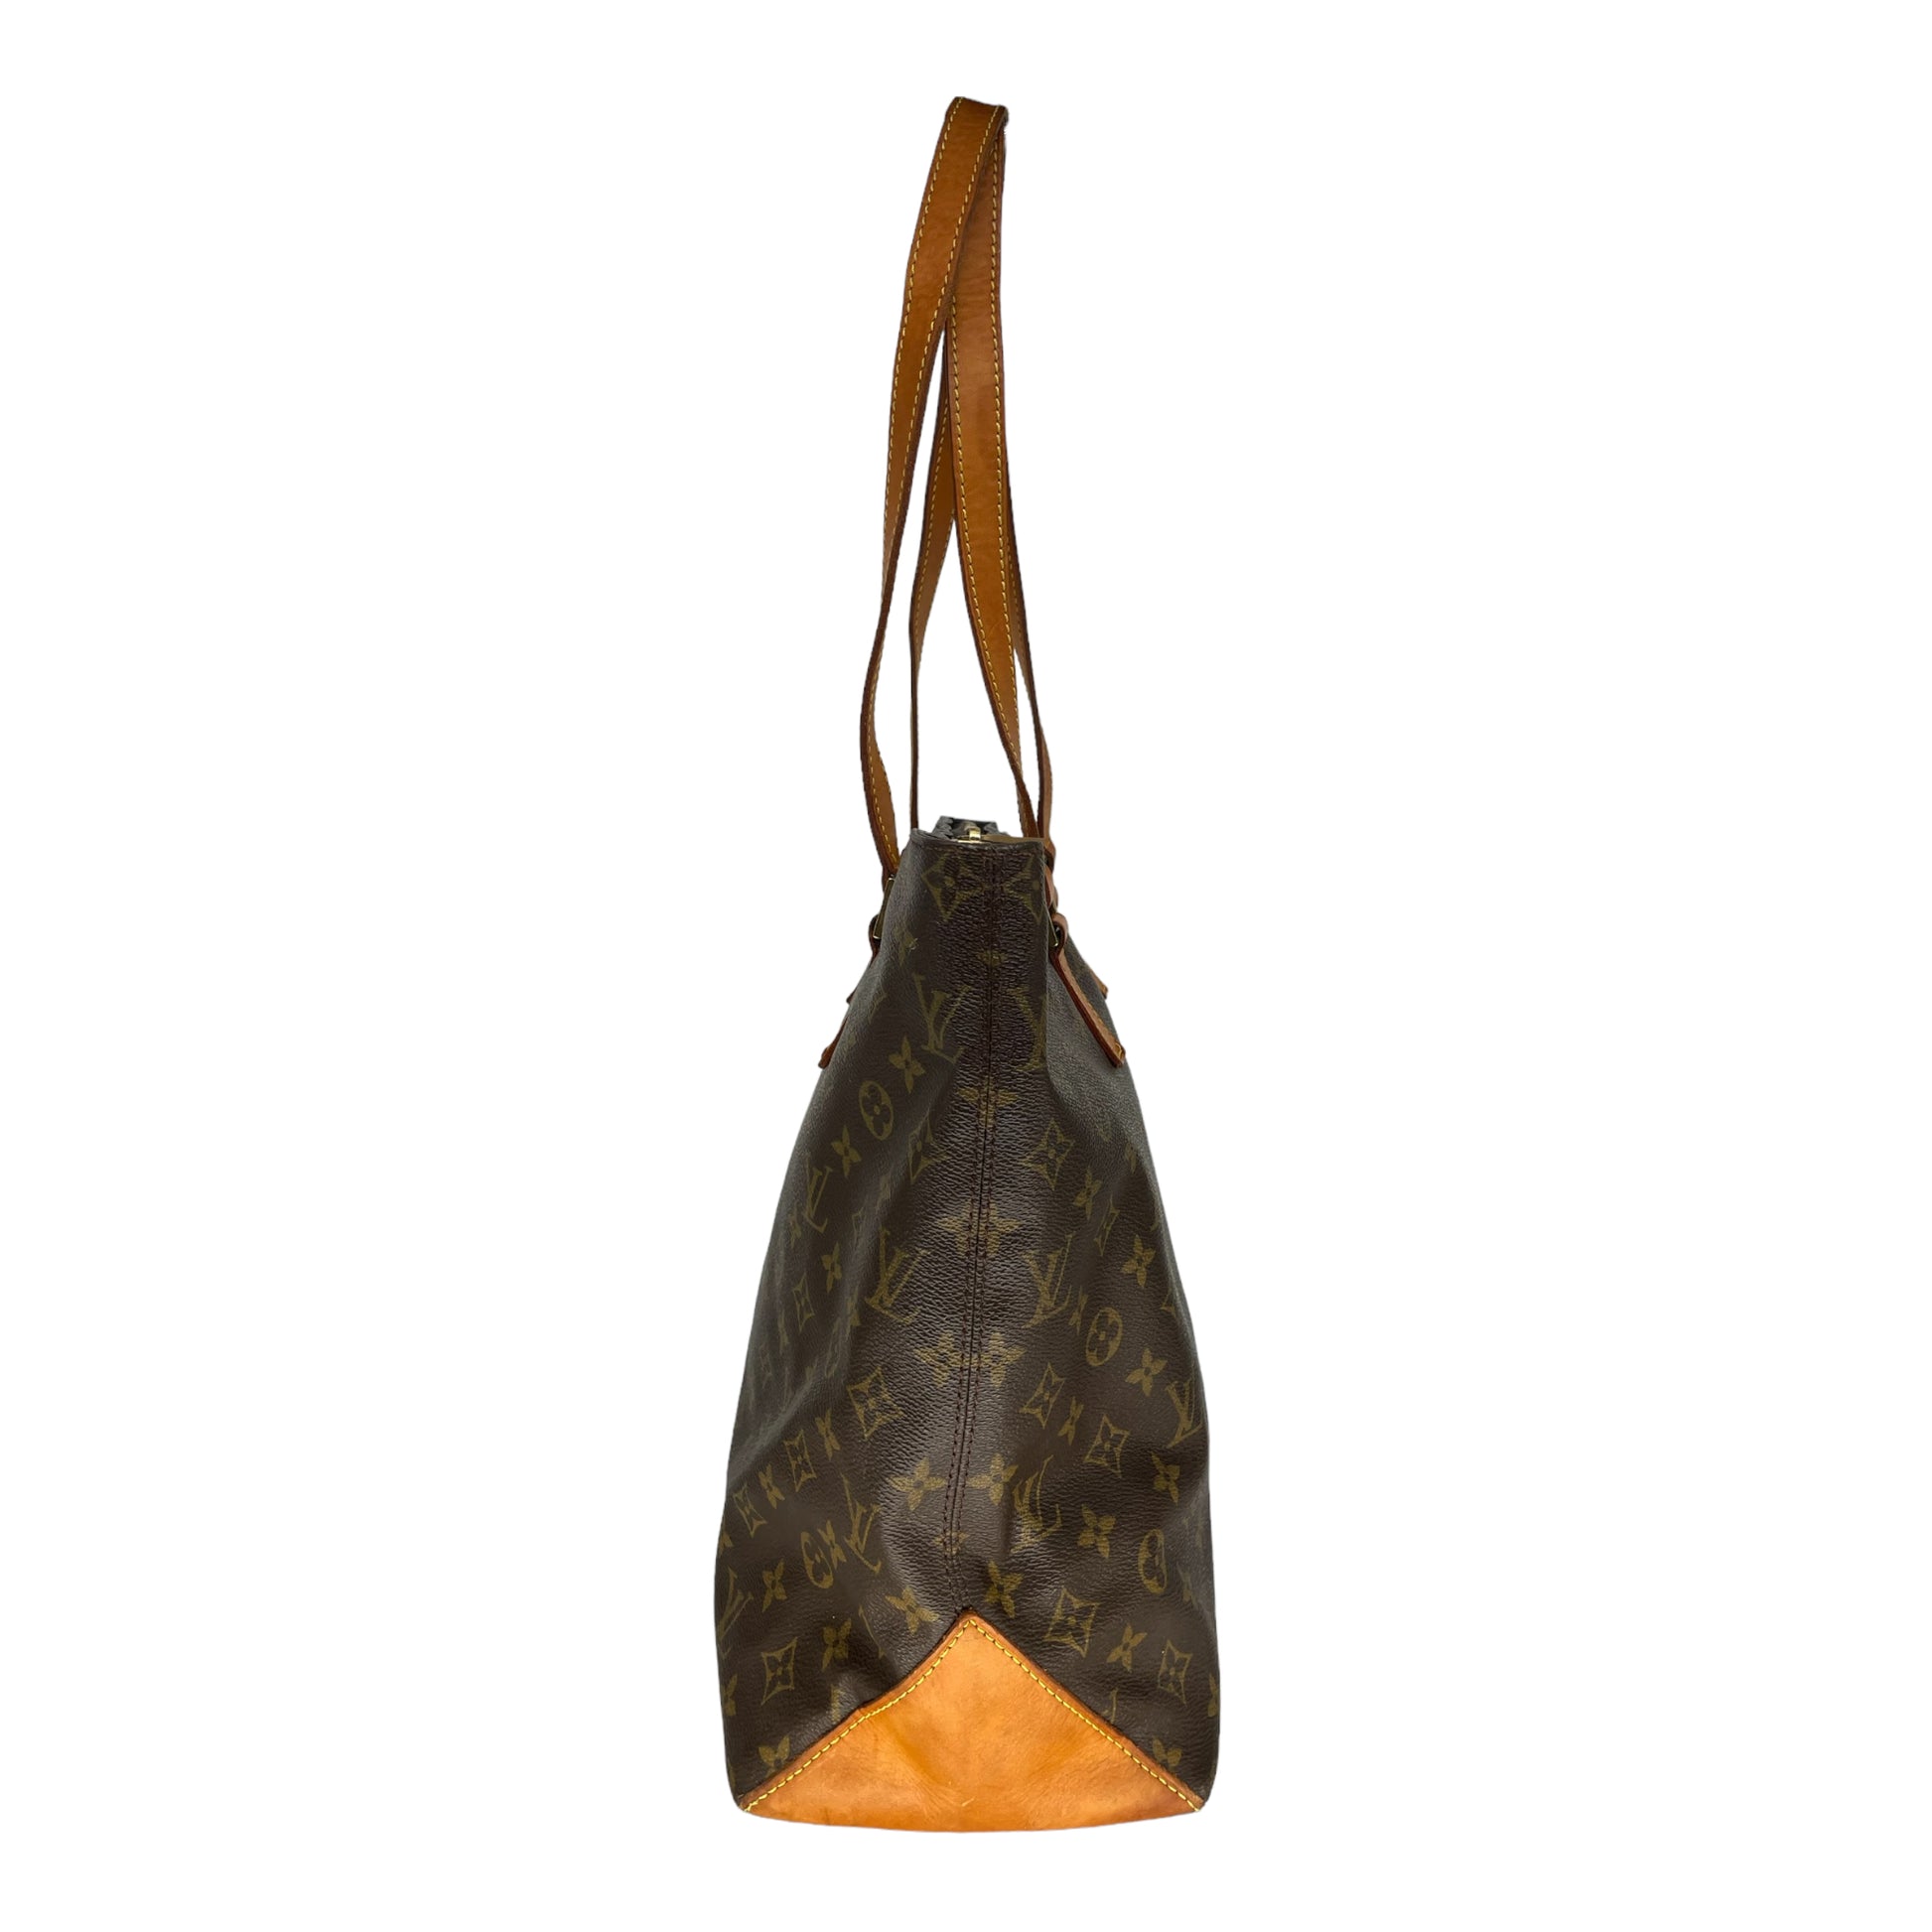 Louis Vuitton Cabas Mezzo Handbag Tote